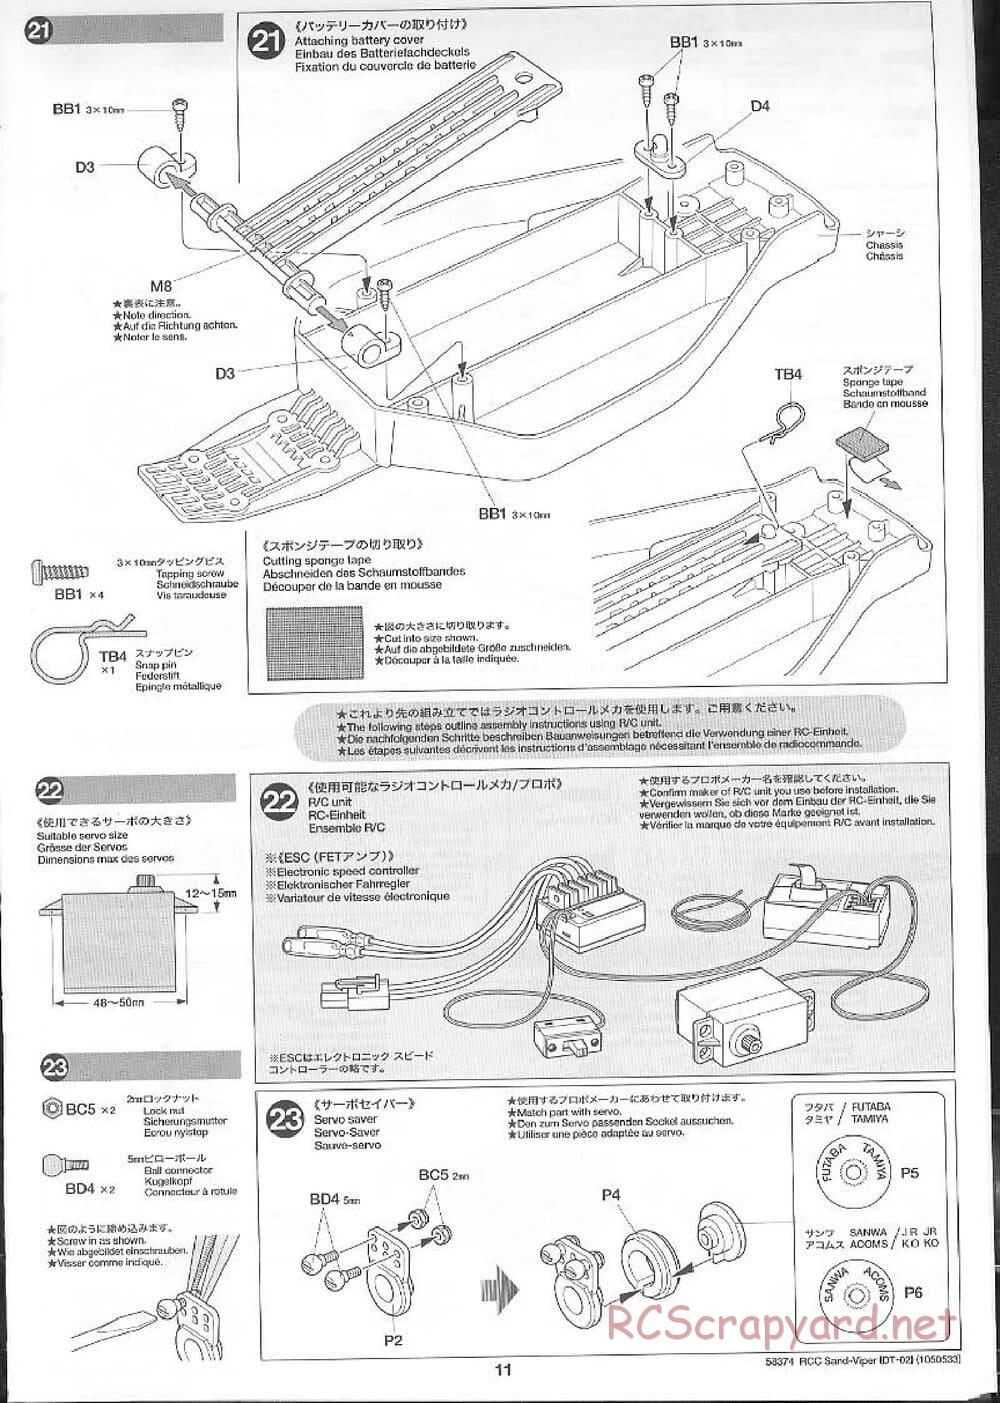 Tamiya - Sand Viper Chassis - Manual - Page 11